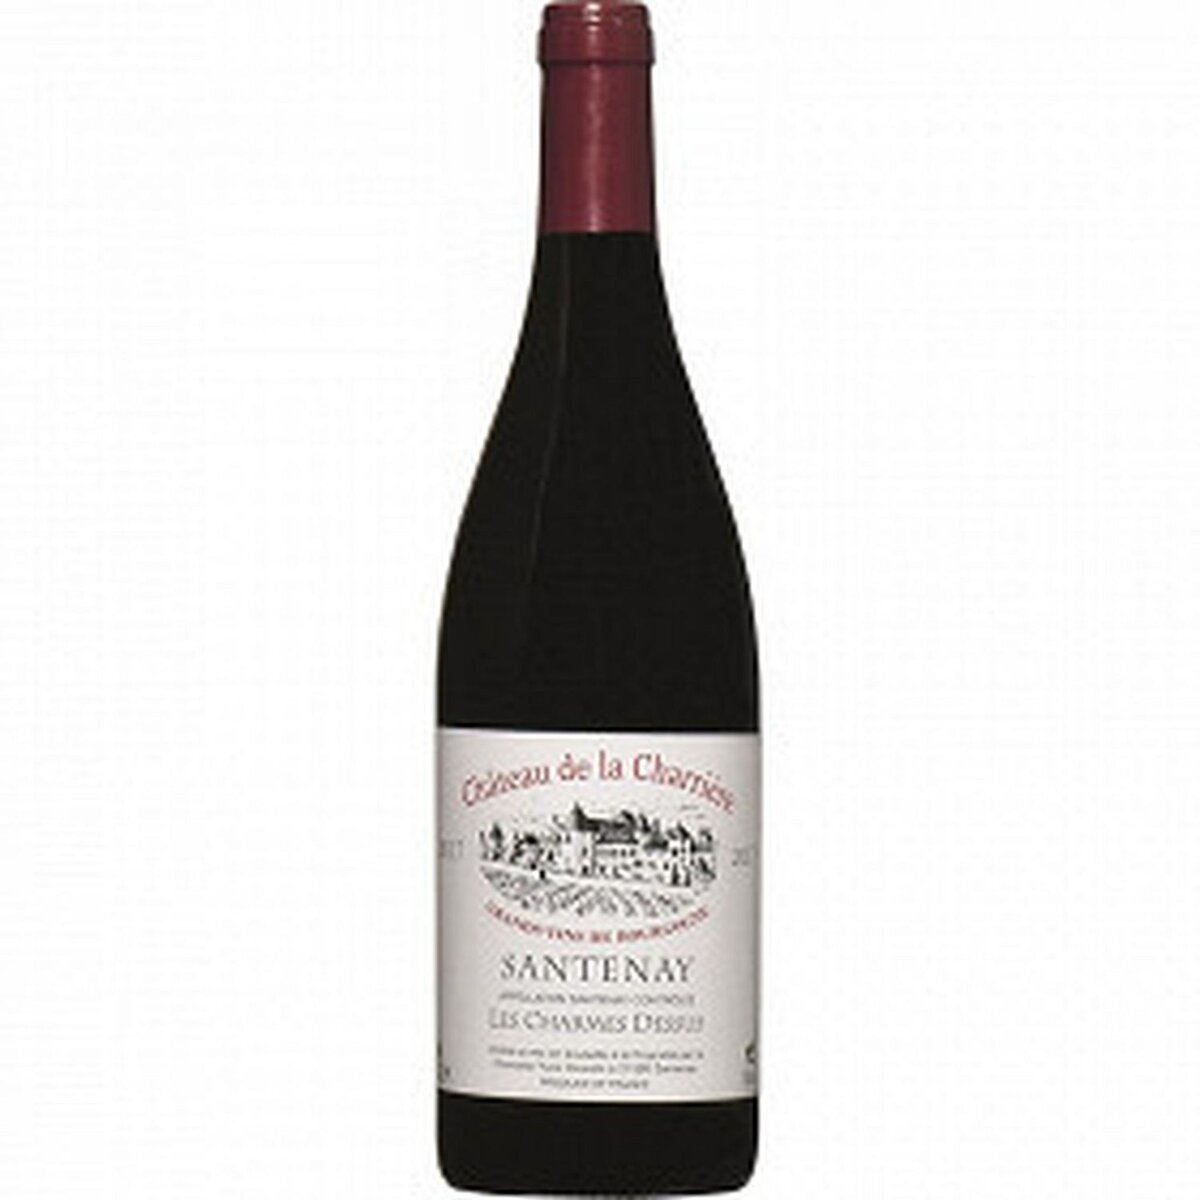 Vin rouge AOP Santenay Charmes Dessus Château de La Charrière Yves Girardin 2019 75cl